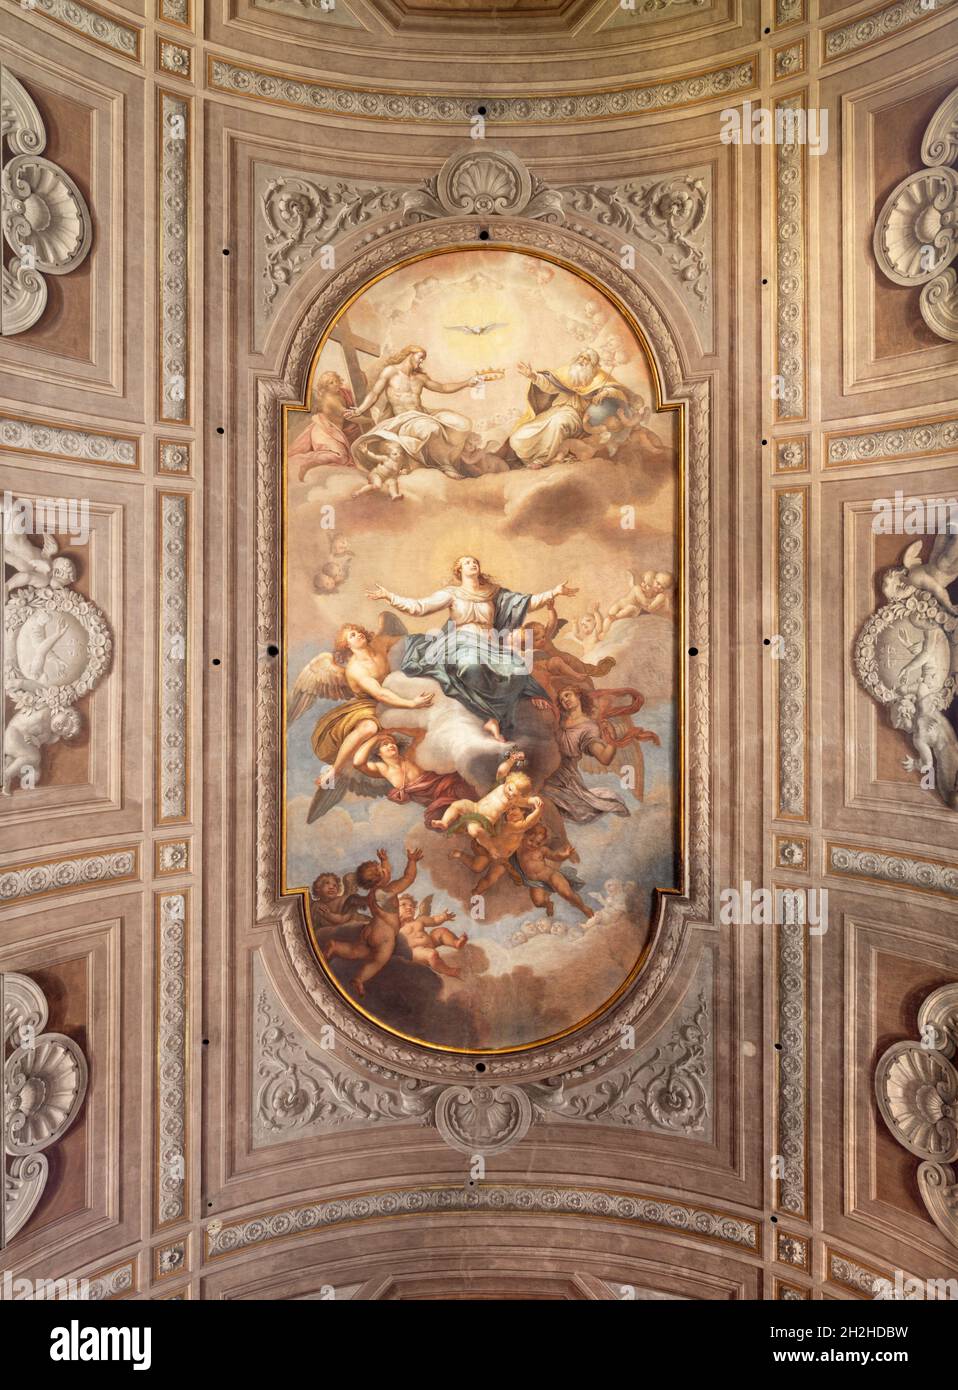 ROME, ITALY - AUGUST 31, 2021: The ceiling fresco of Assumptin in the church Santa Maria della Concezione dei Cappuccini by Liborio Coccetti (1796). Stock Photo